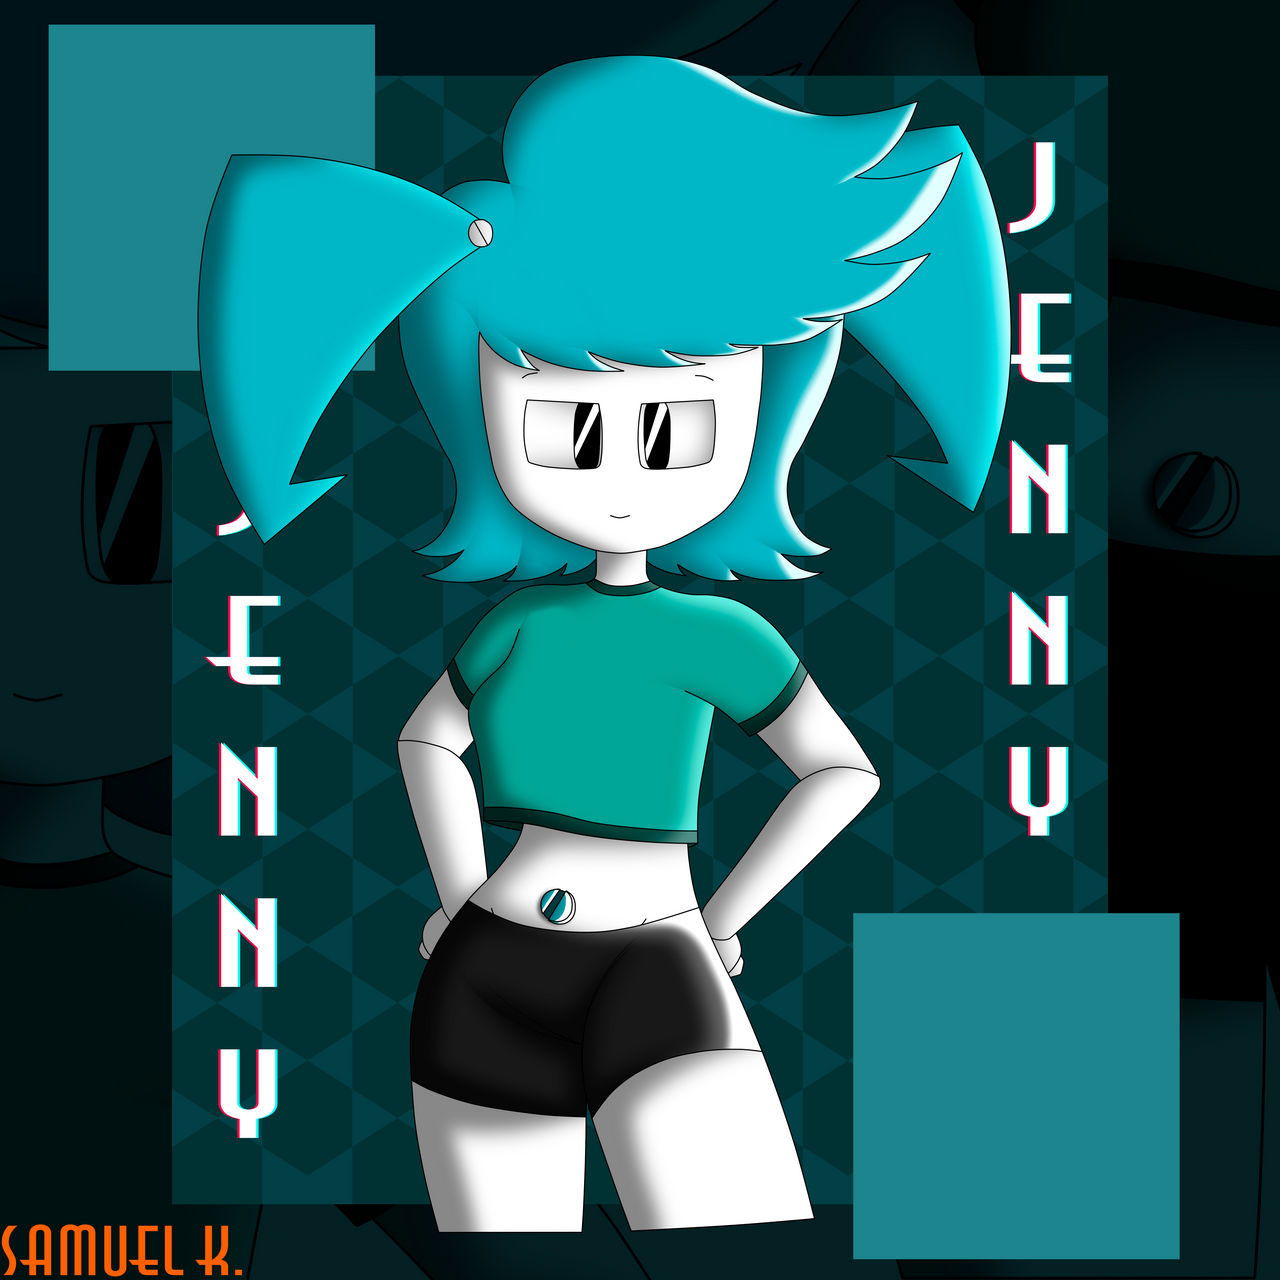 Jenny Wakeman by fanvideogames on DeviantArt